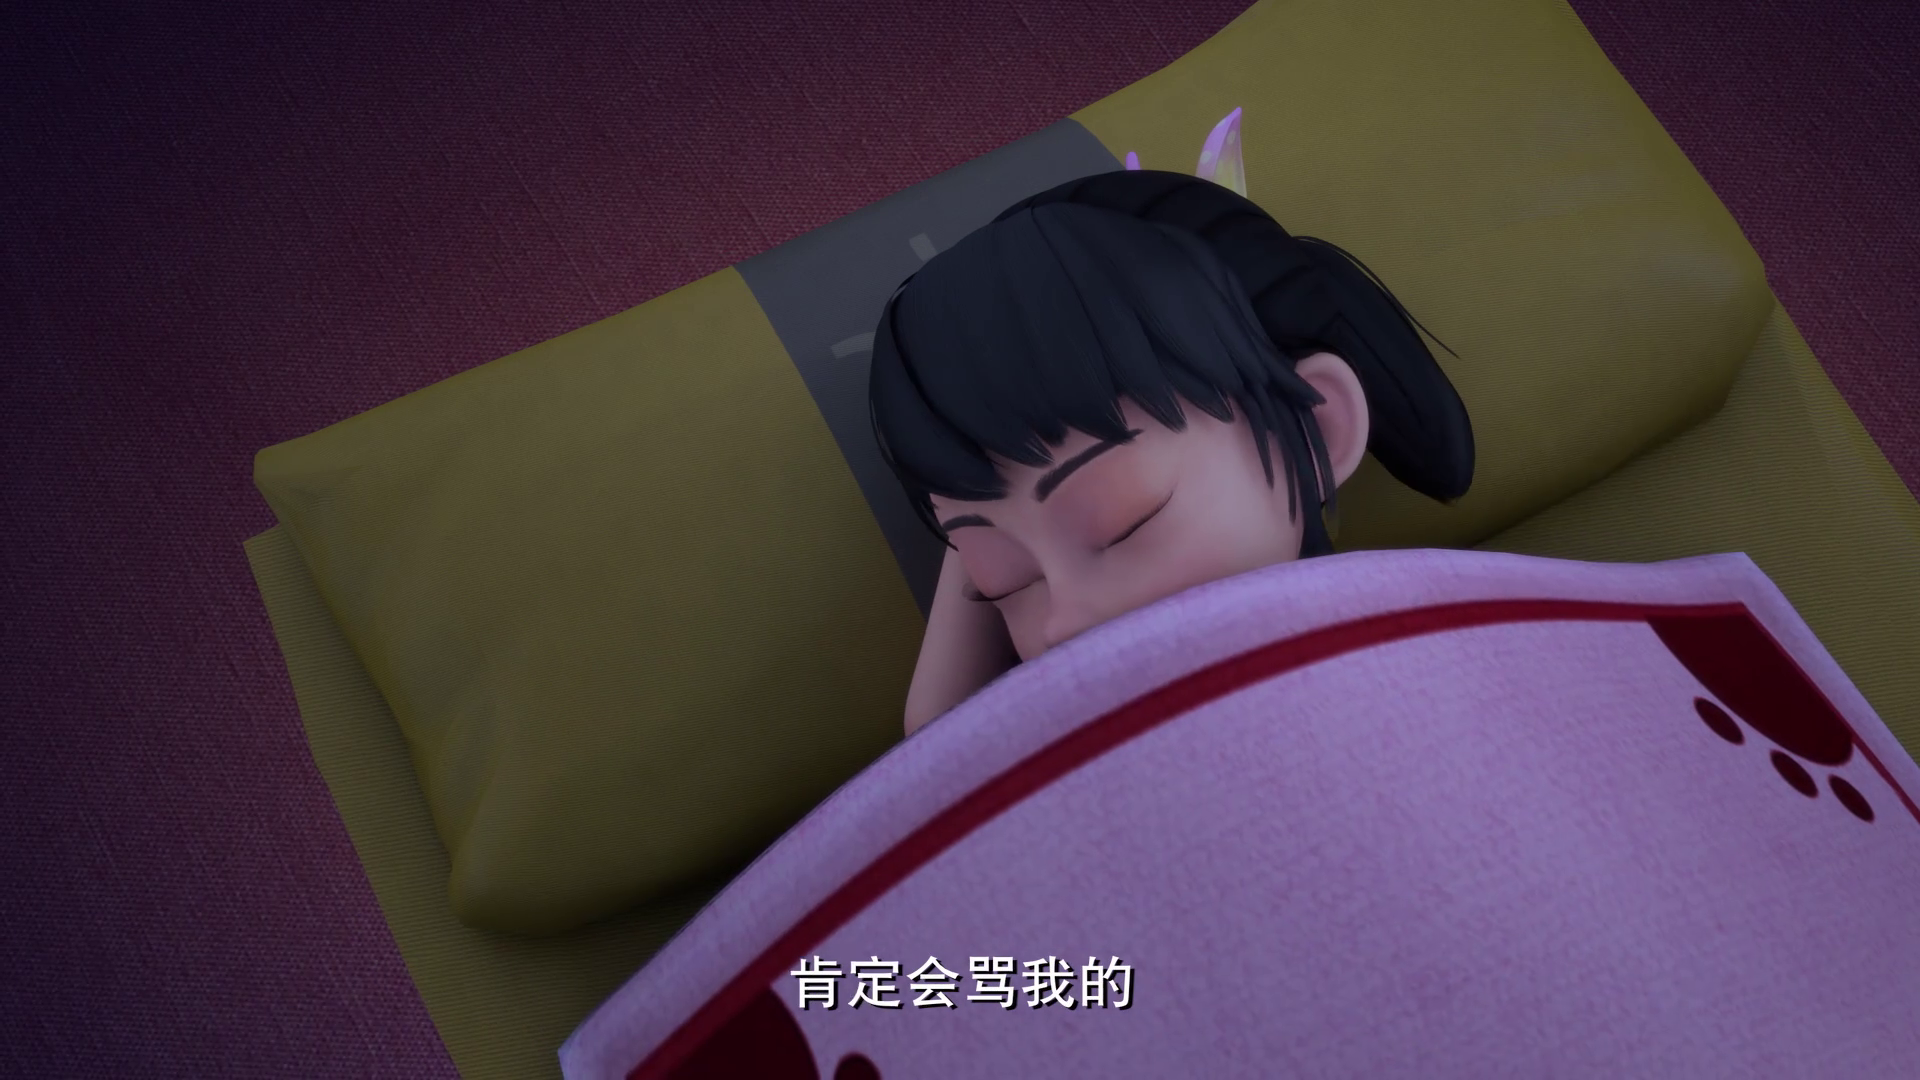 熊出没探险日记:五处让人吐槽的剧情,赵琳睡觉也睡得太死了